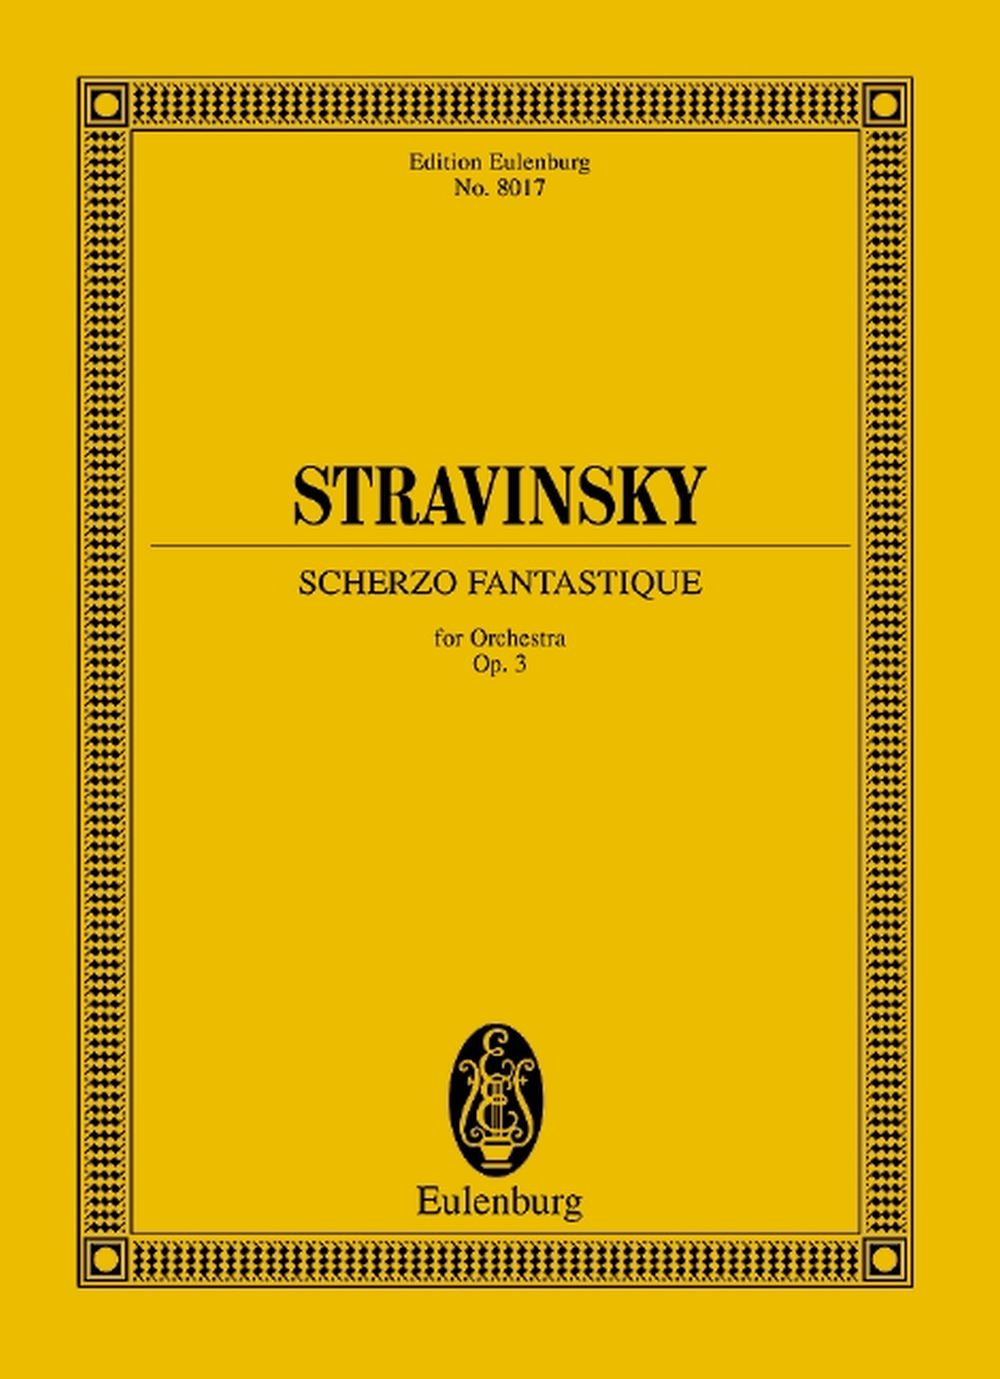 Igor Stravinsky: Scherzo fantastique op. 3: Orchestra